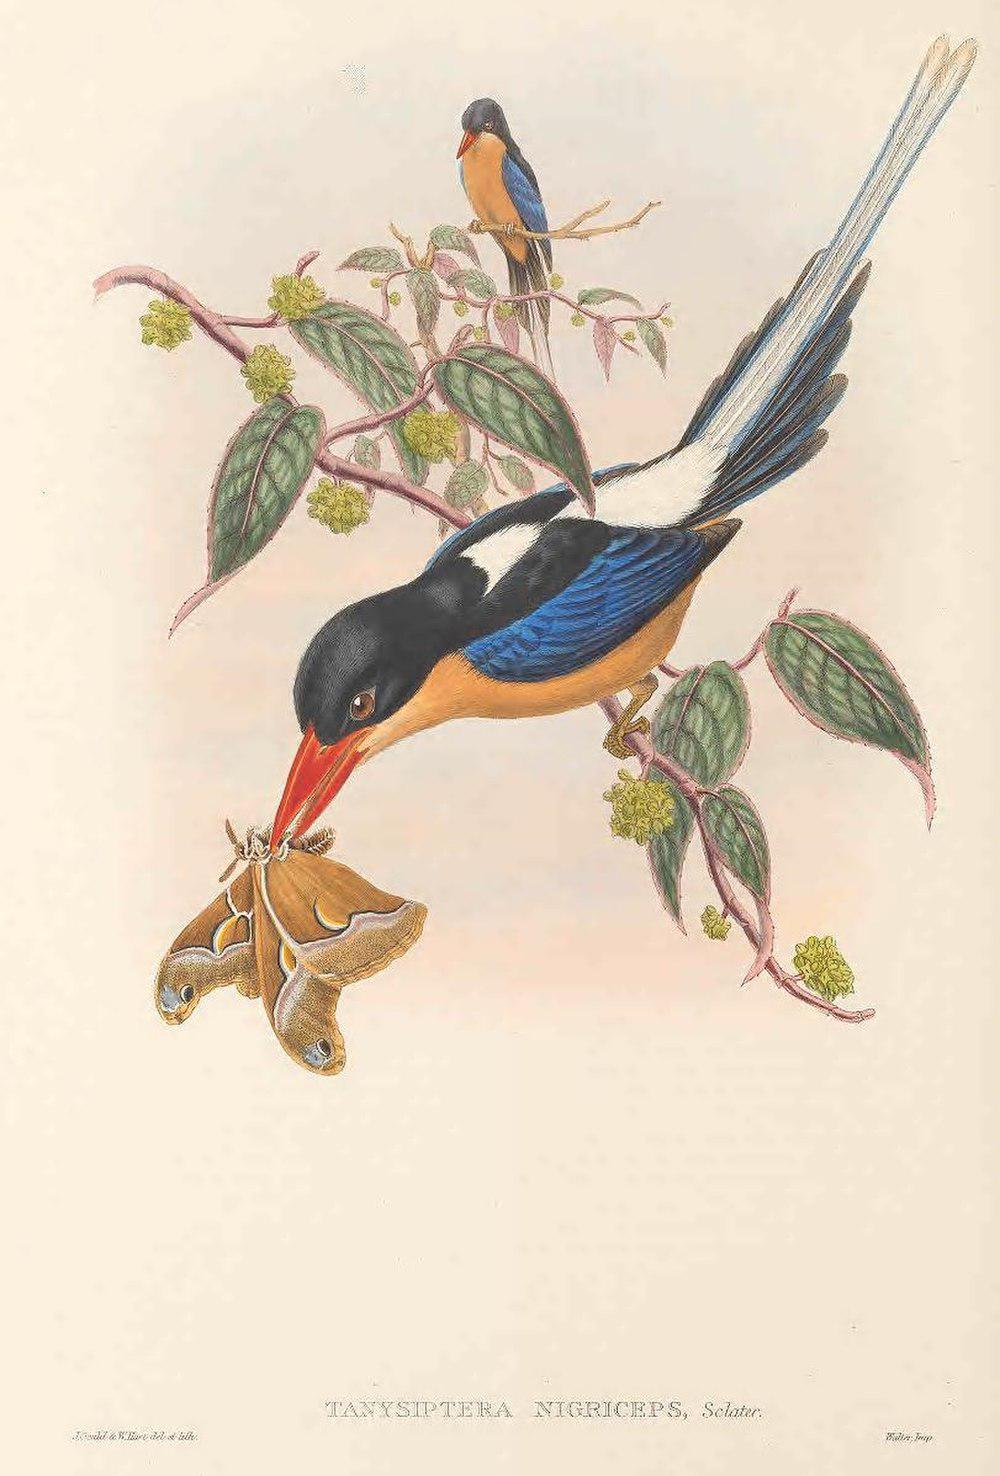 黑冠仙翡翠 / Black-capped Paradise Kingfisher / Tanysiptera nigriceps